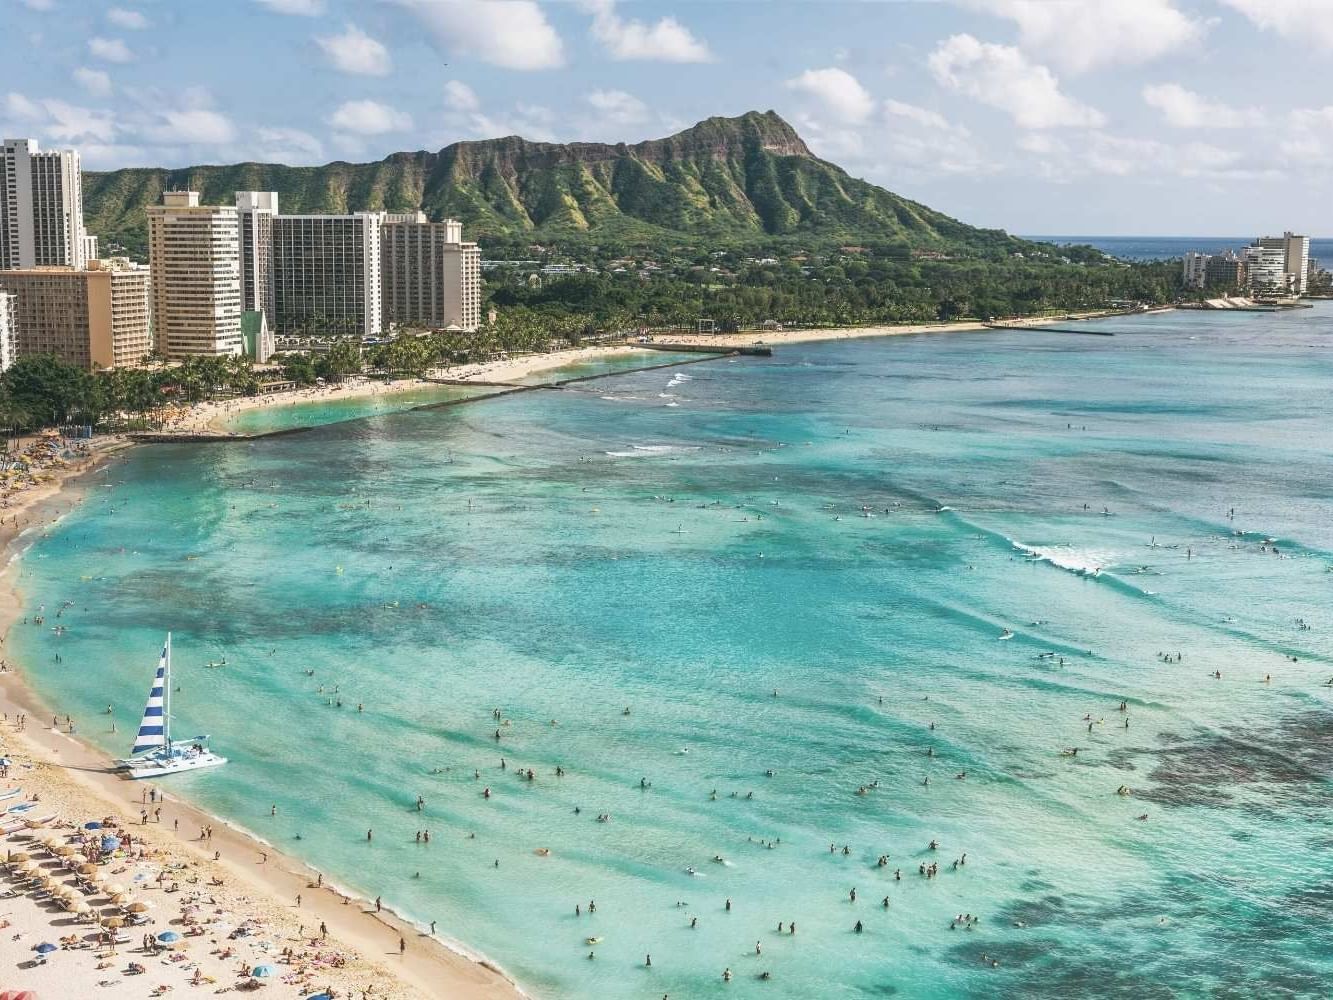 Hawaii with Oahu & Maui